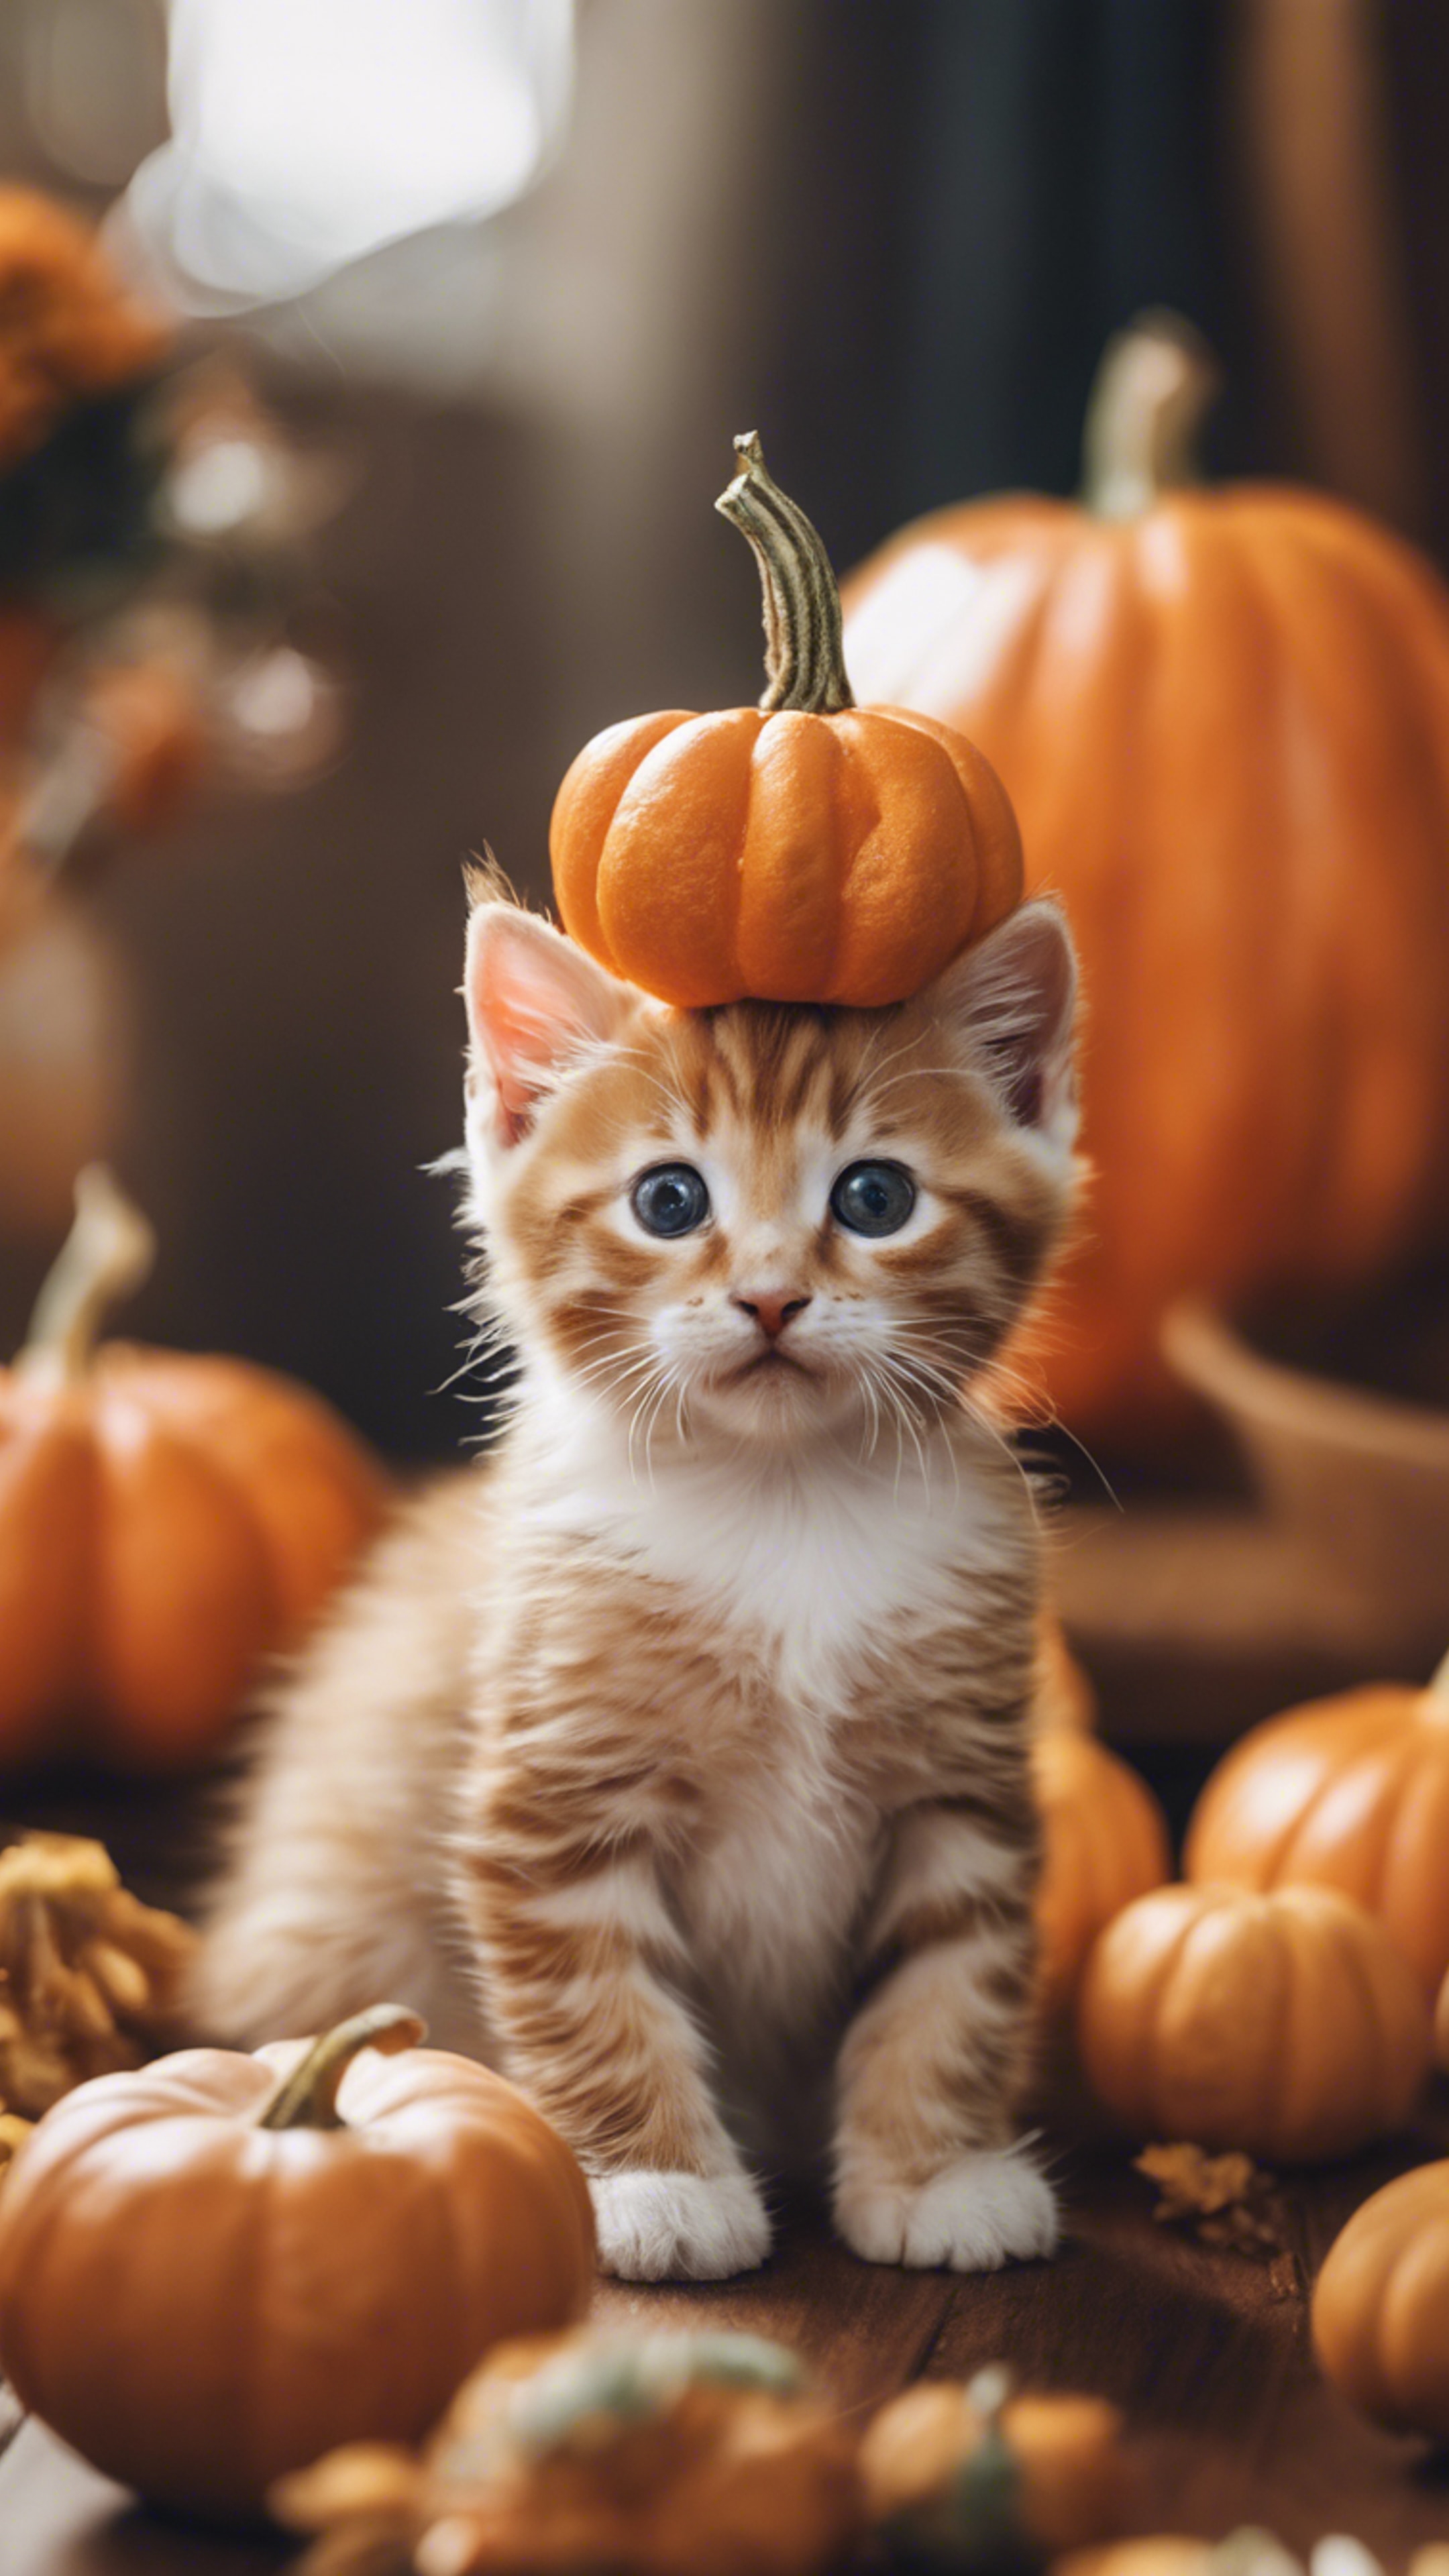 An orange tabby kitten dressed up as a tiny pumpkin for Halloween festivities. Papel de parede[a5205dadd28d41bcbdef]